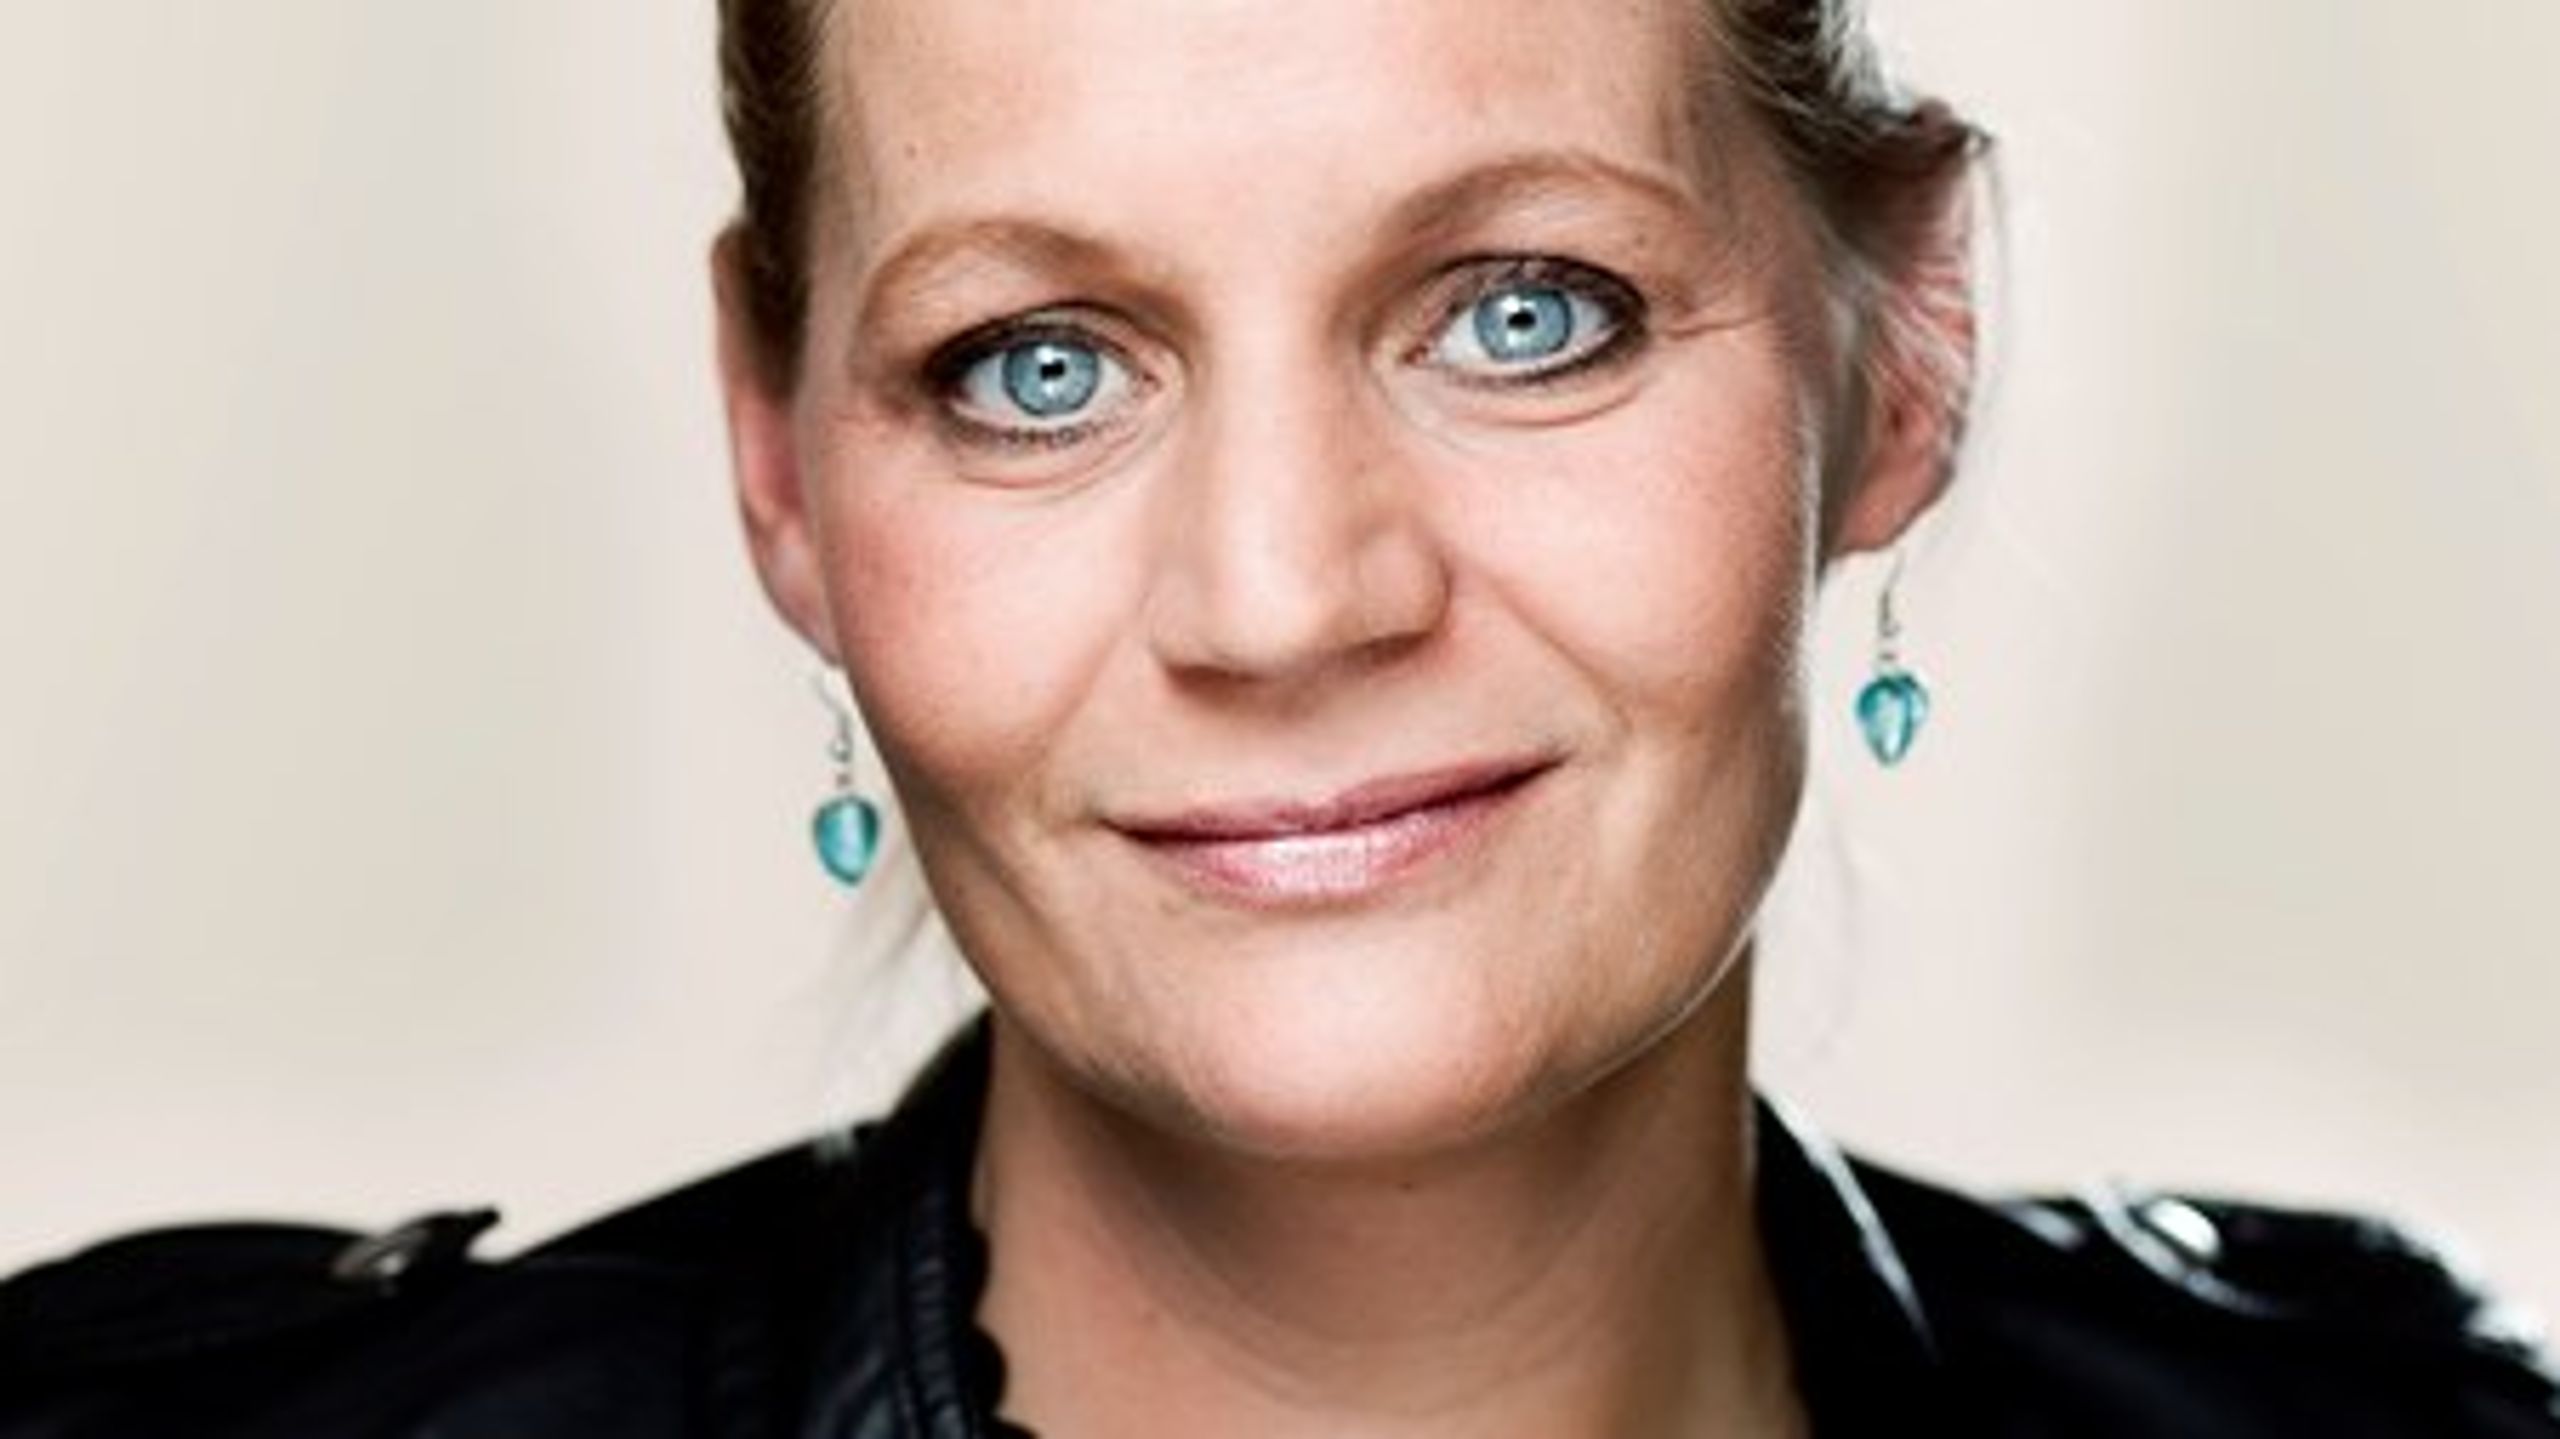 Dansk Folkeparti ser frem til forhandlingerne om serviceloven, men ministeren skal være lydhør overfor partiets forslag til forbedringer. Det mener partiets handicapordfører Karina Adsbøl.